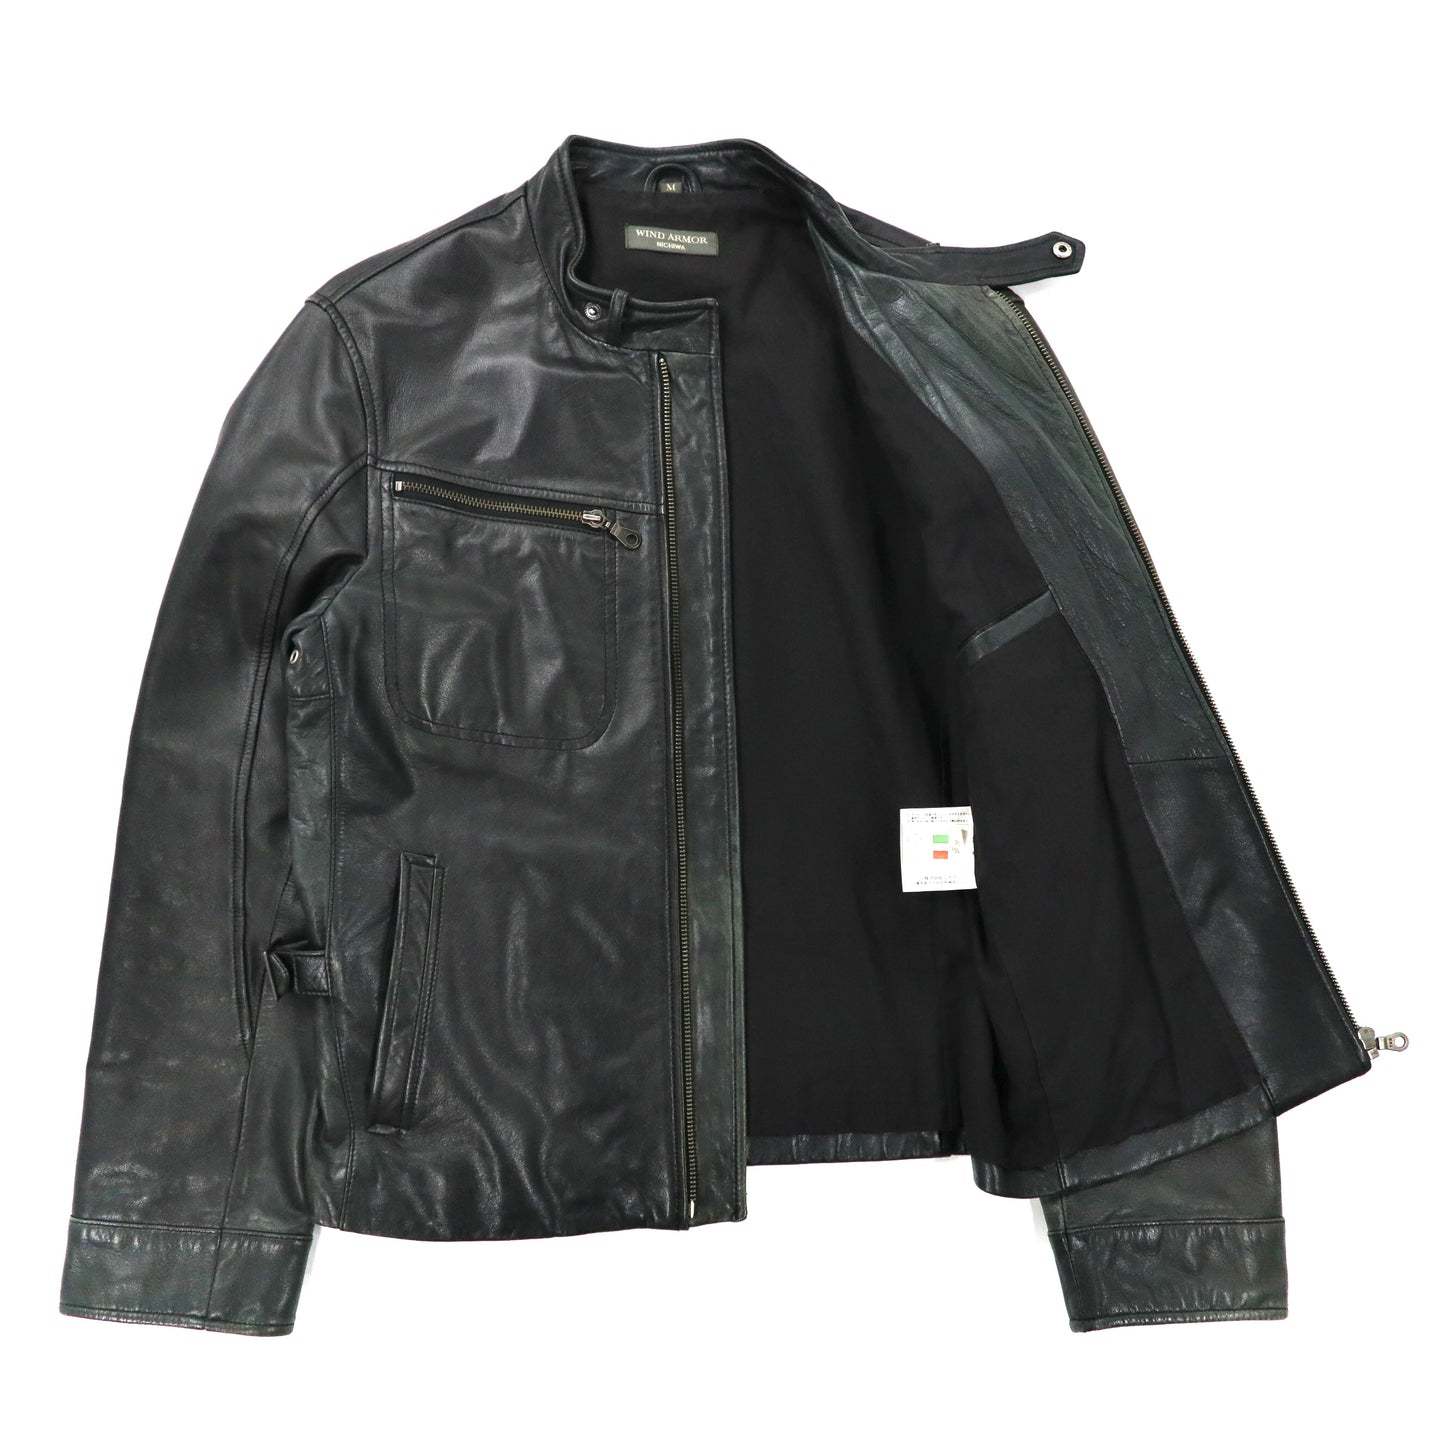 Wind Armor Single Riders Jacket M Black Italian Lamb Leather Japan 